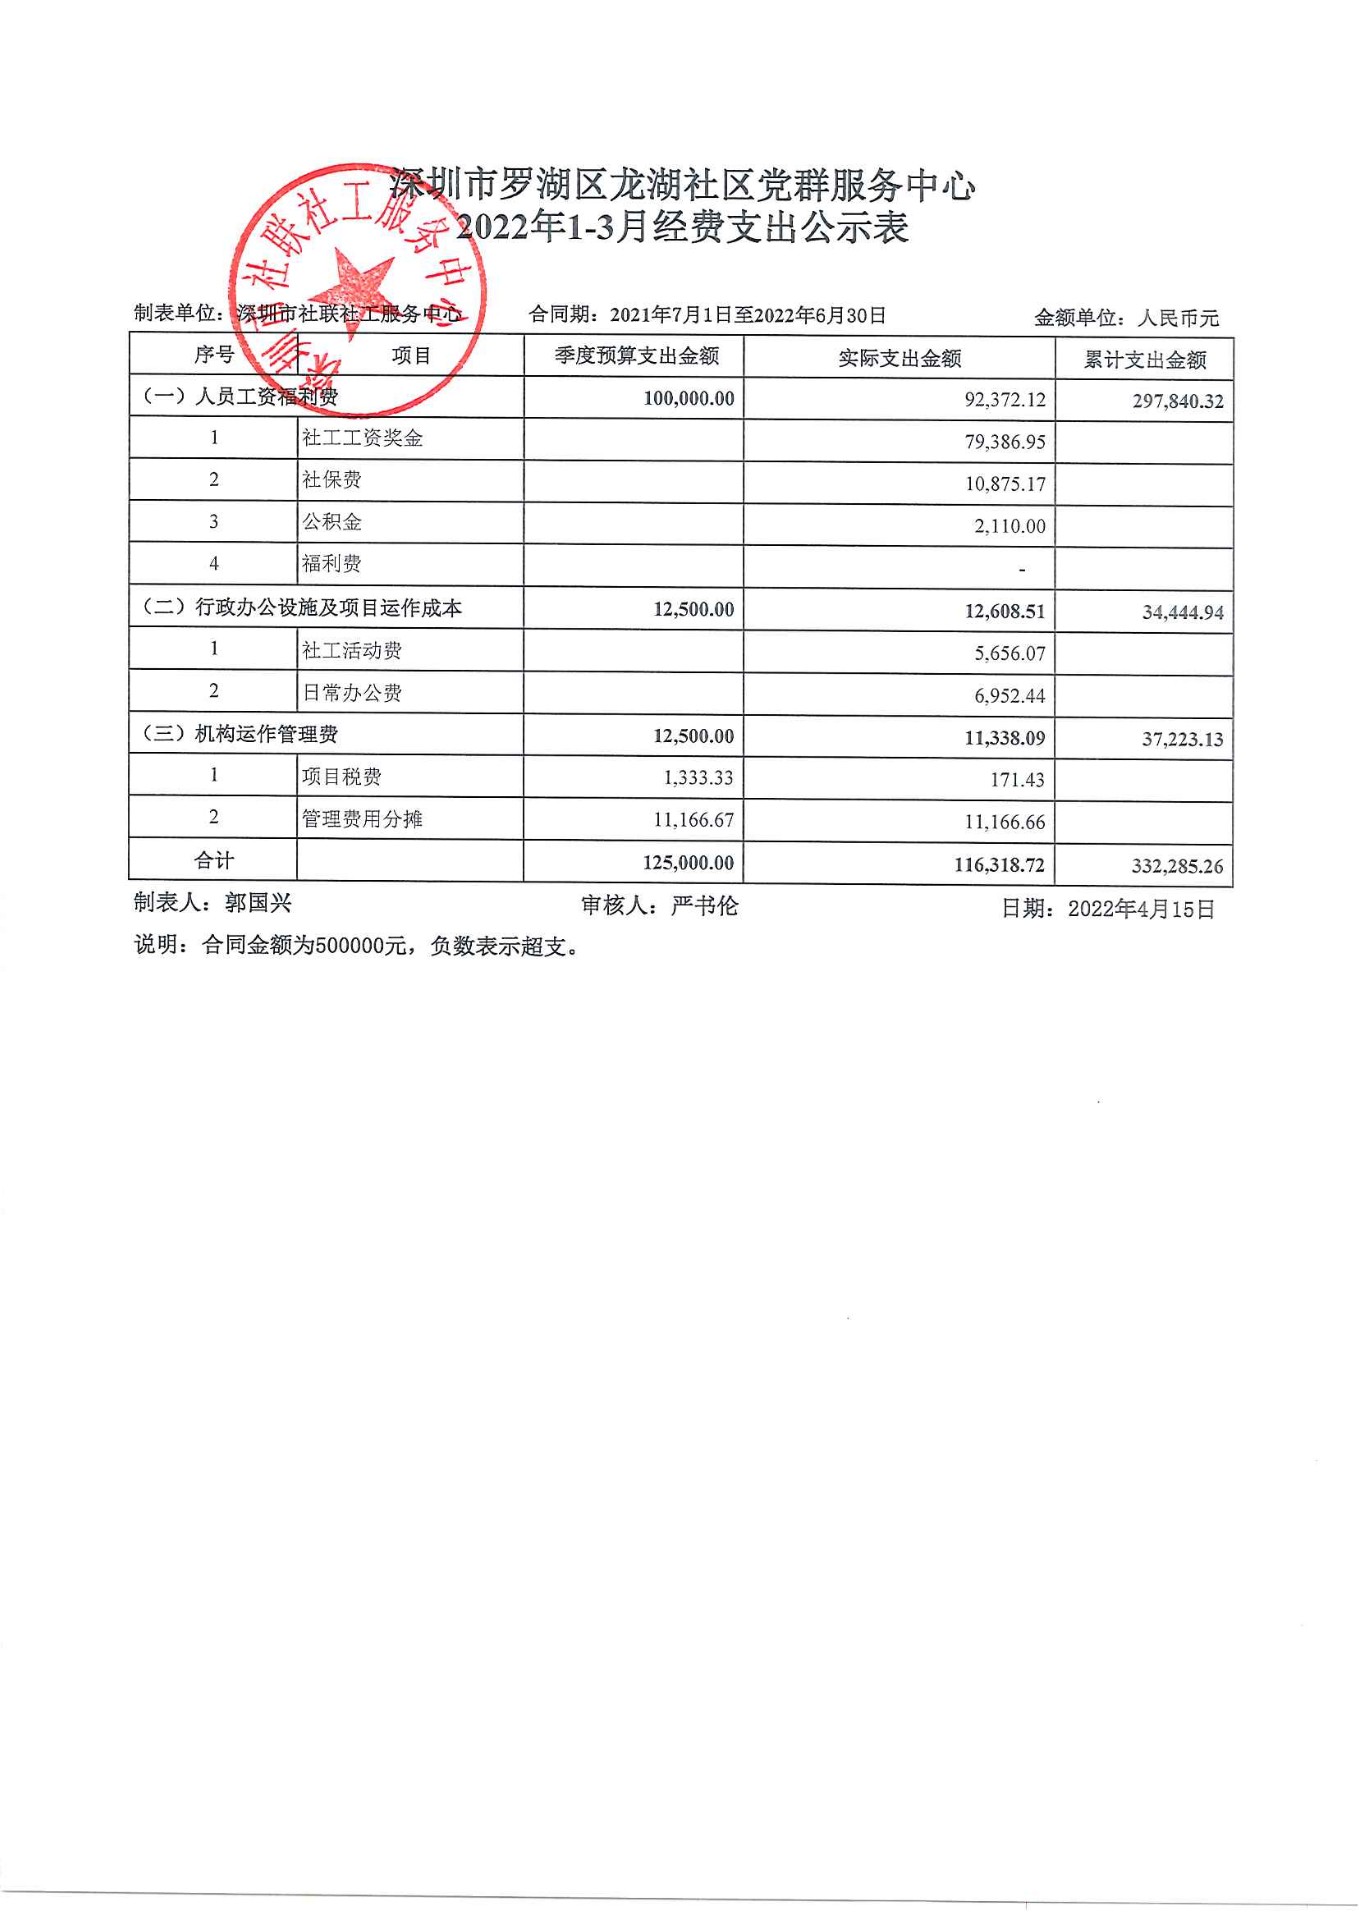 龙湖社区2022年1-3月财务公示表